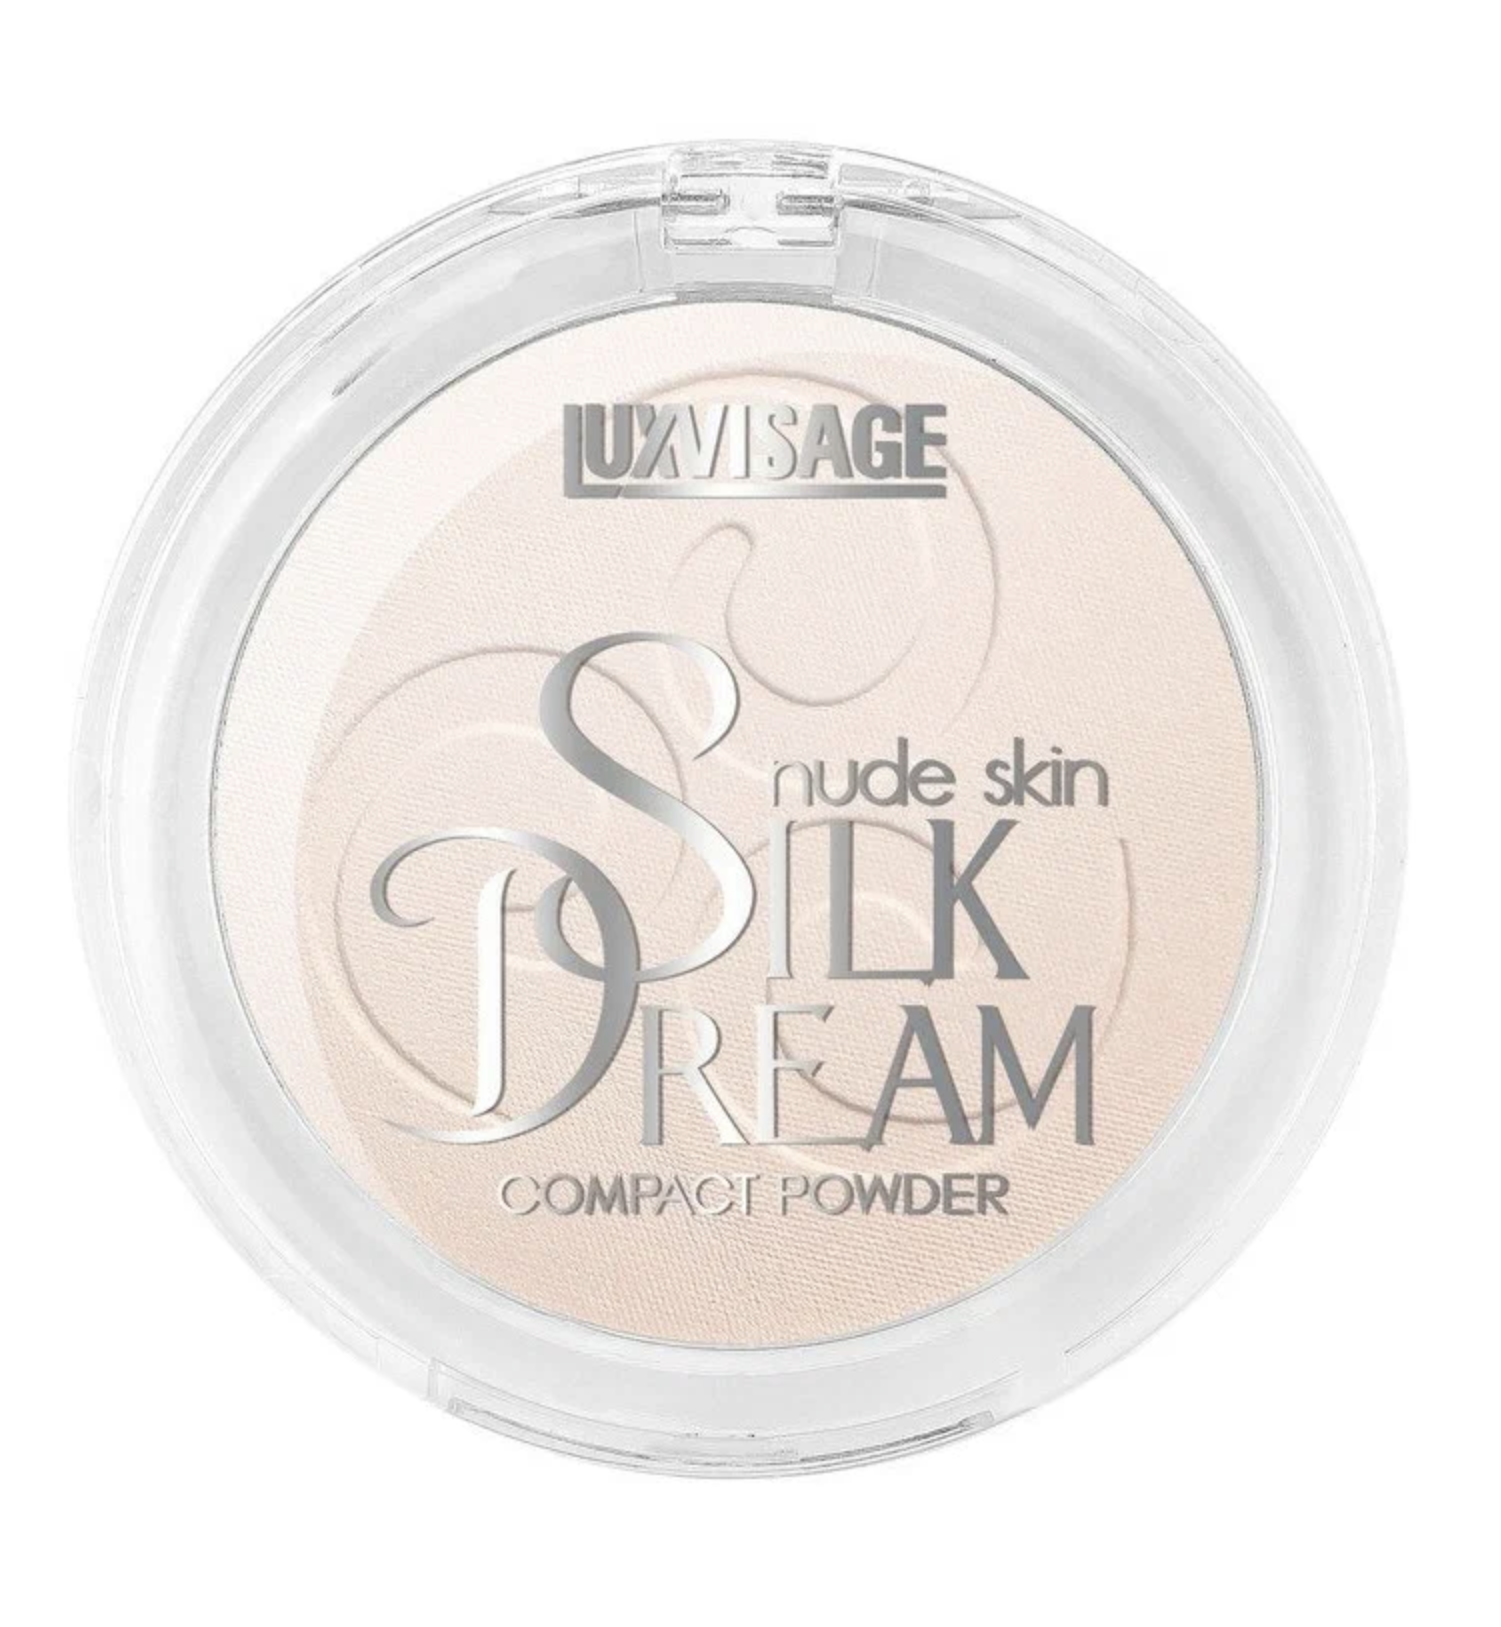   / LuxVisage -     Silk Dream nude skin  01, 10 